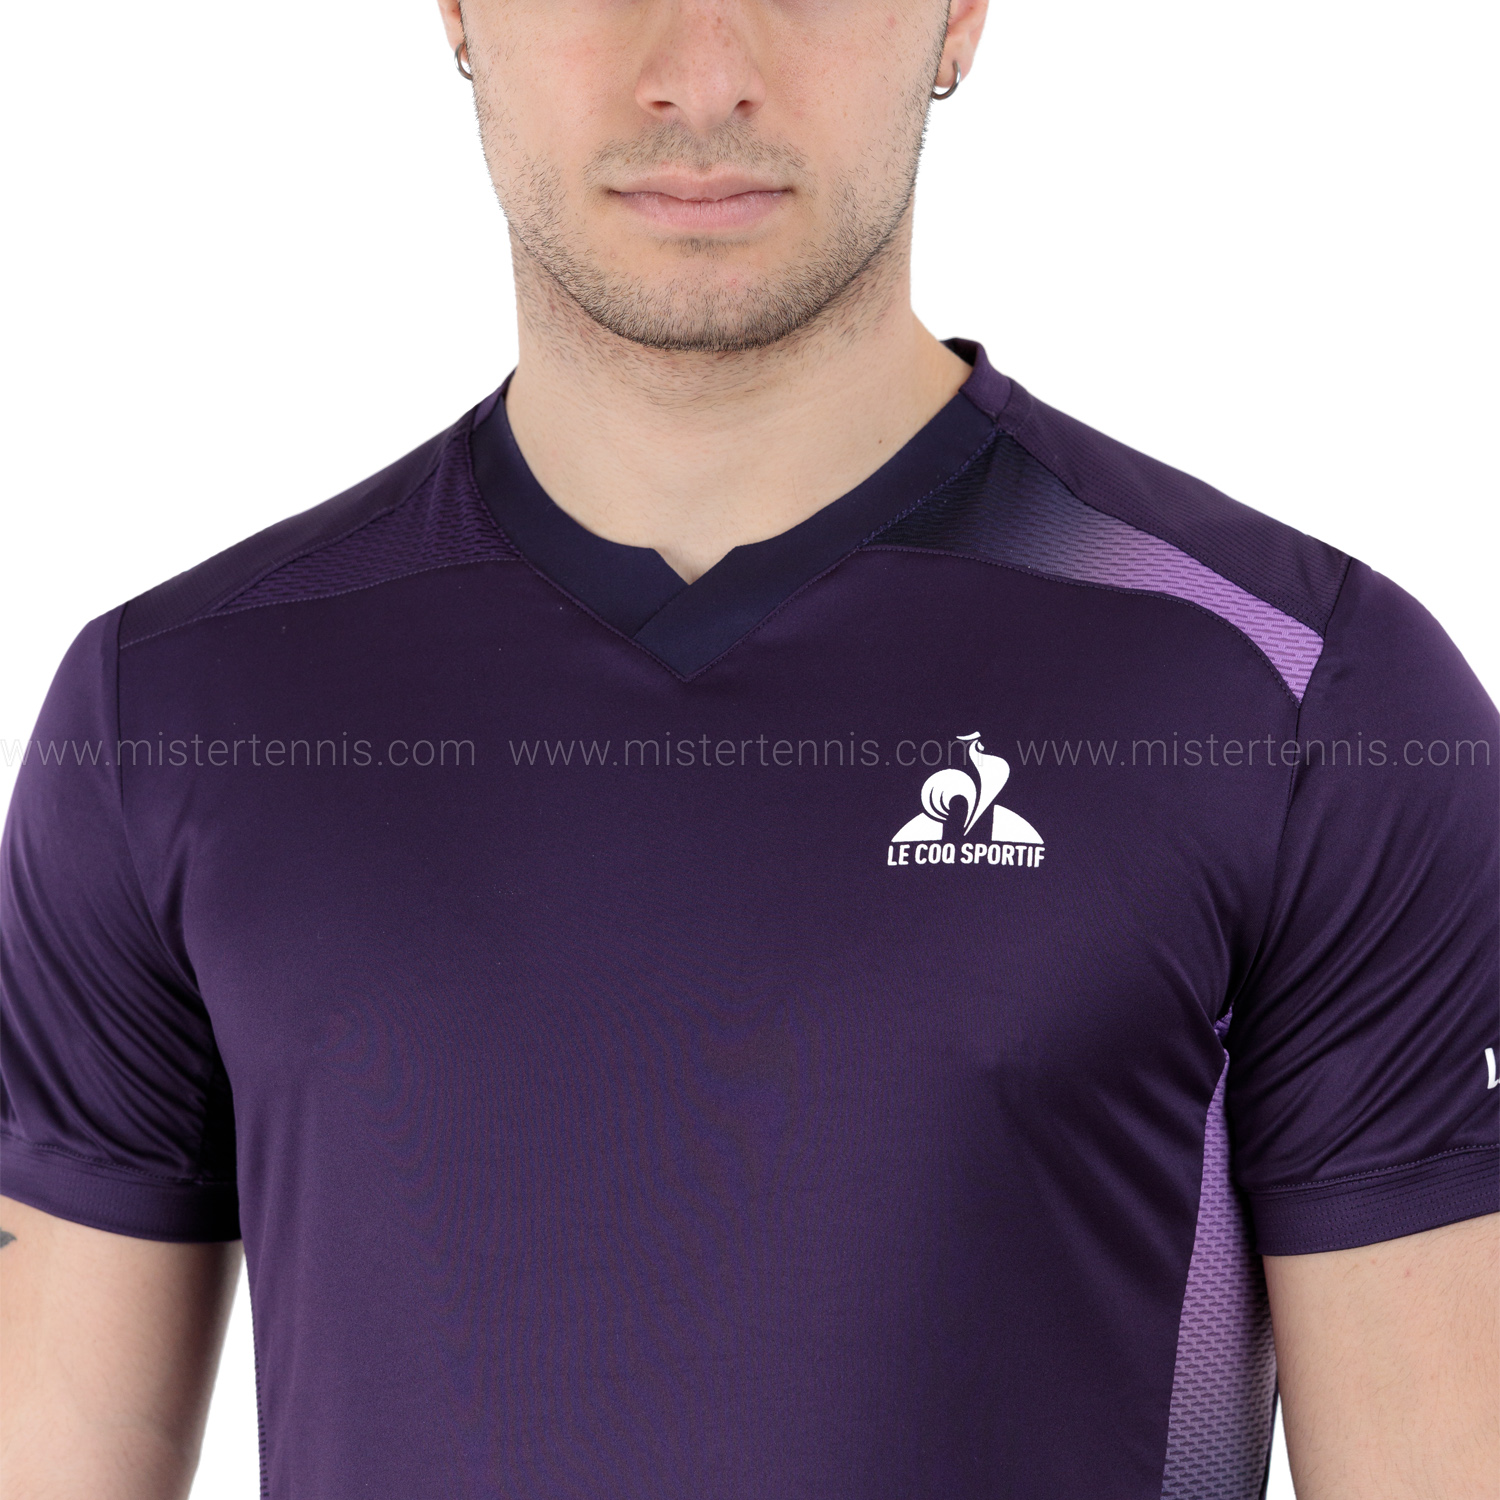 Le Coq Sportif Pro T-Shirt - Purple Velvet